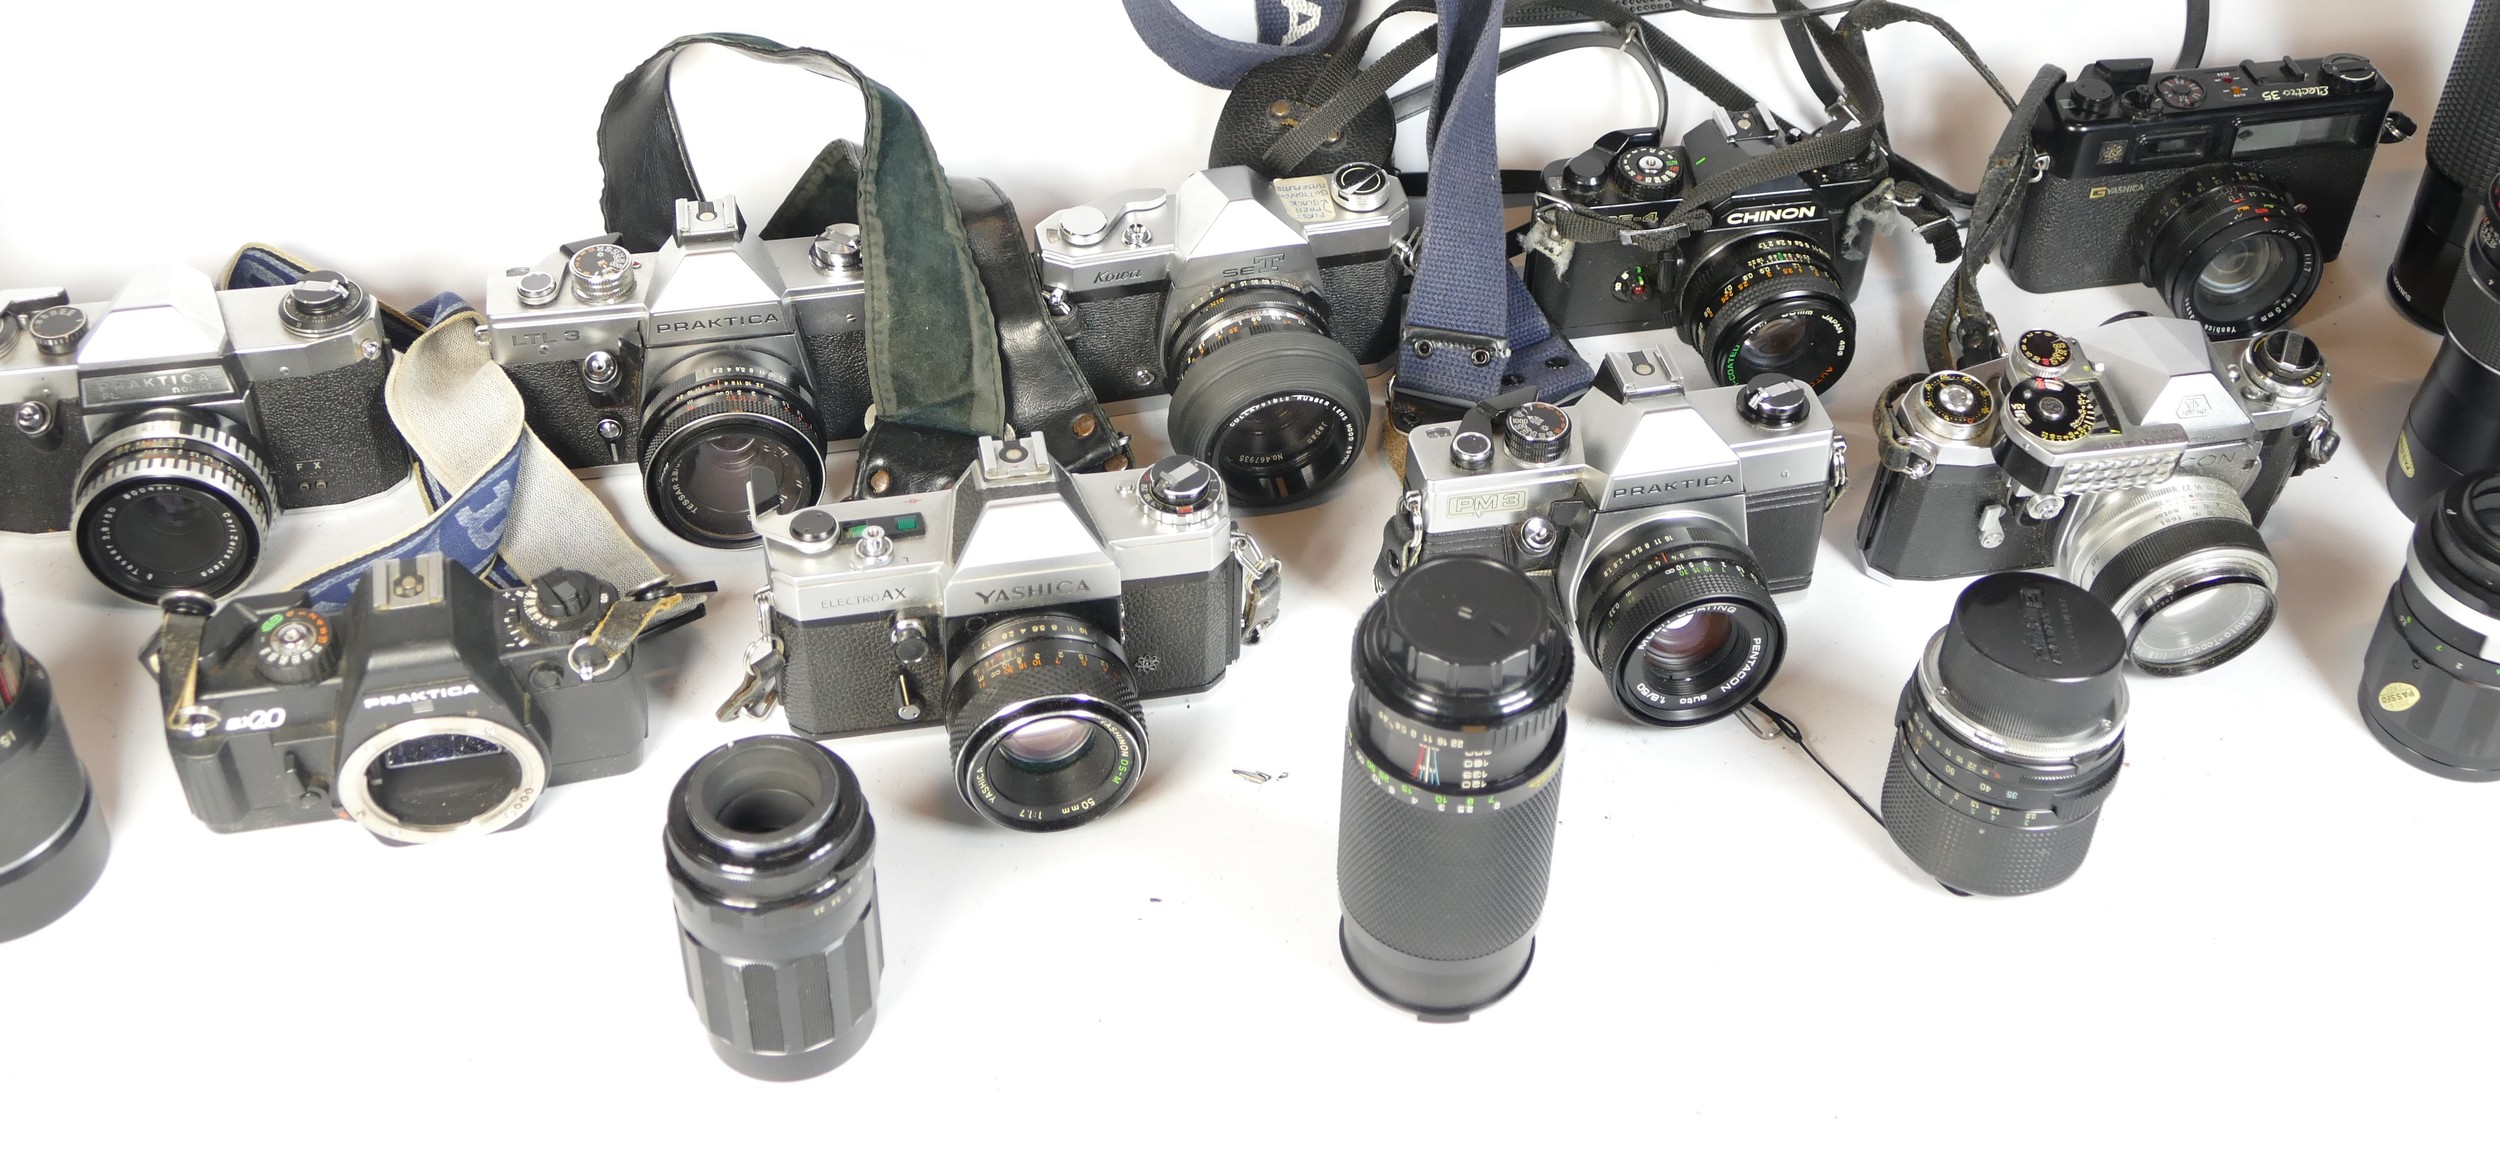 Nine SLR vintage film cameras to include a Yashica AX, a Praktica PM3, a Praktica LTL3 and a - Image 3 of 3